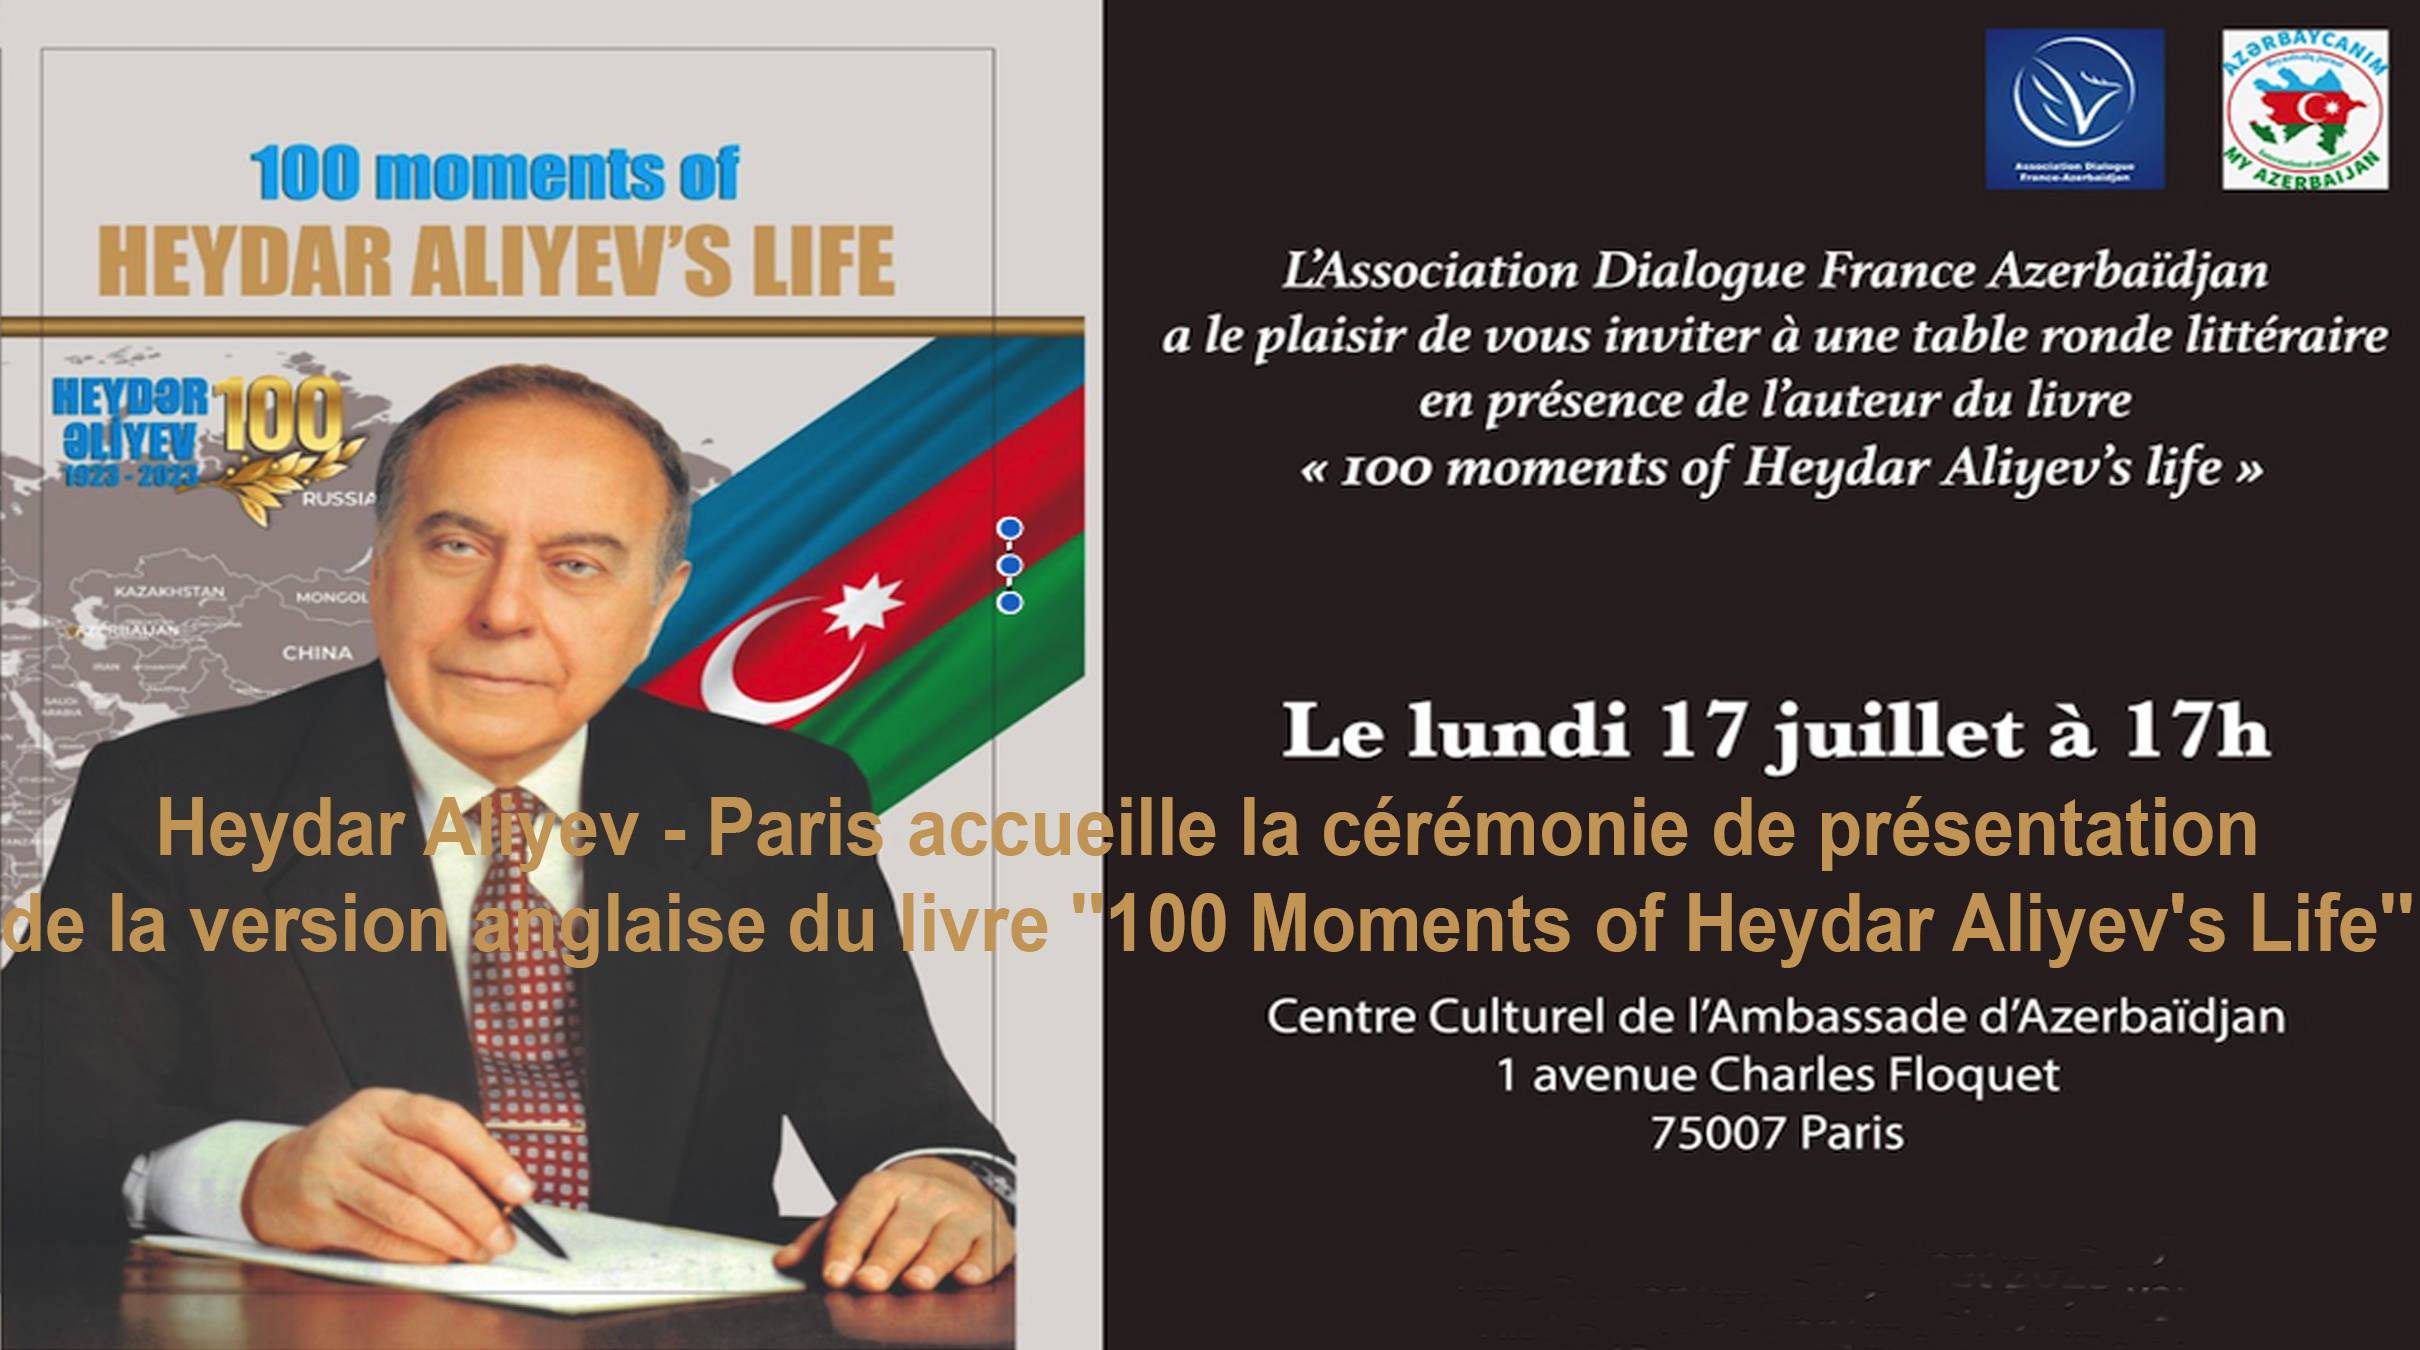 AFRICA-VOGUE-COVER- Heydar-Aliyev-Paris-accueille-la-cérémonie-de-présentation-de-la-version-anglaise-du-livre-100-Moments-of-Heydar-Aliyev's-Life-DN-AFRICA-Media-Partner